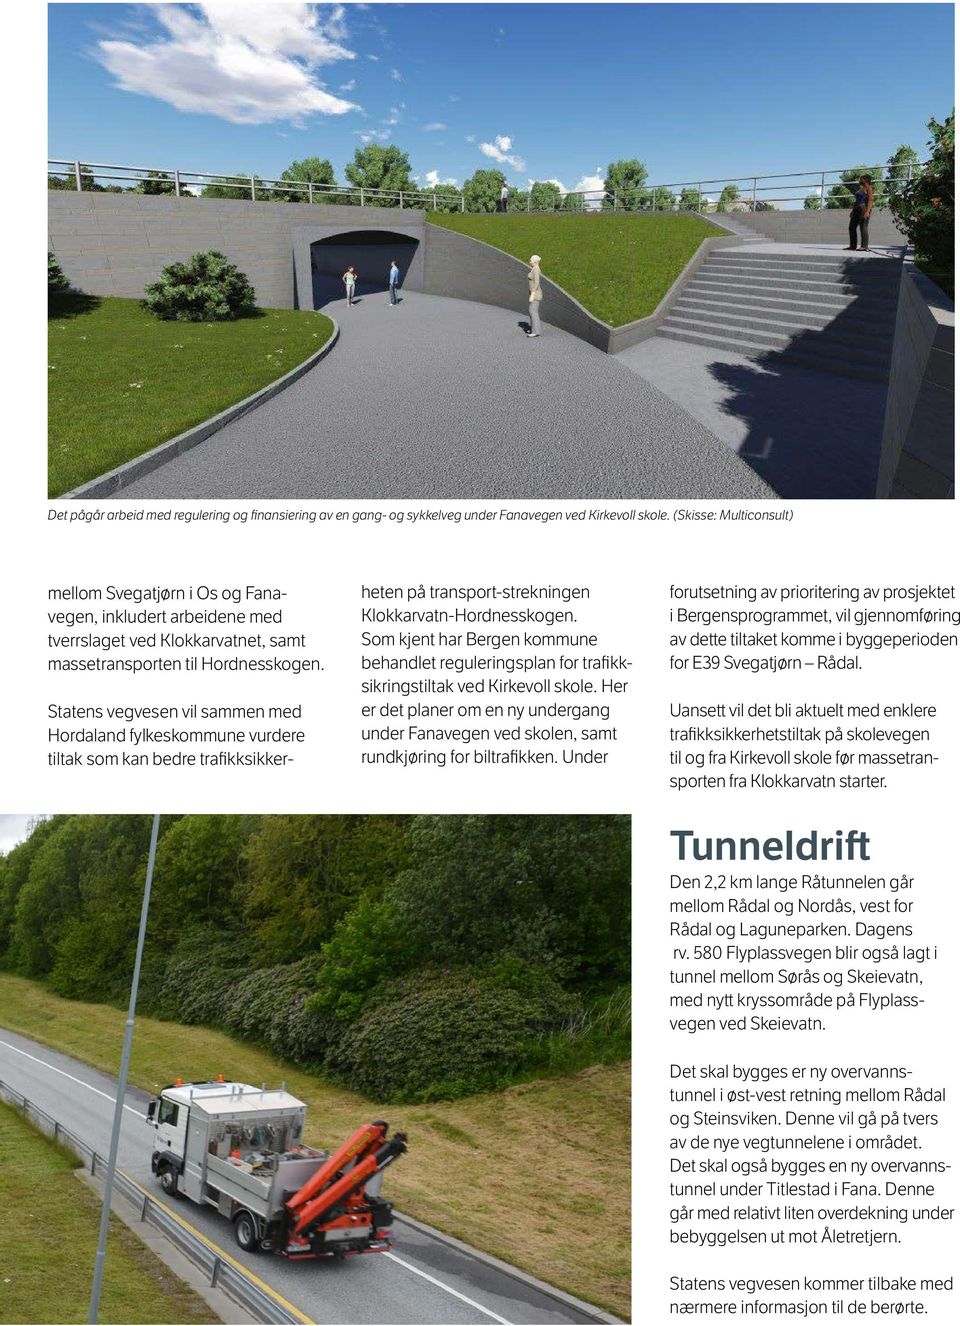 Statens vegvesen vil sammen med Hordaland fylkeskommune vurdere tiltak som kan bedre trafikksikker- heten på transport-strekningen Klokkarvatn-Hordnesskogen.